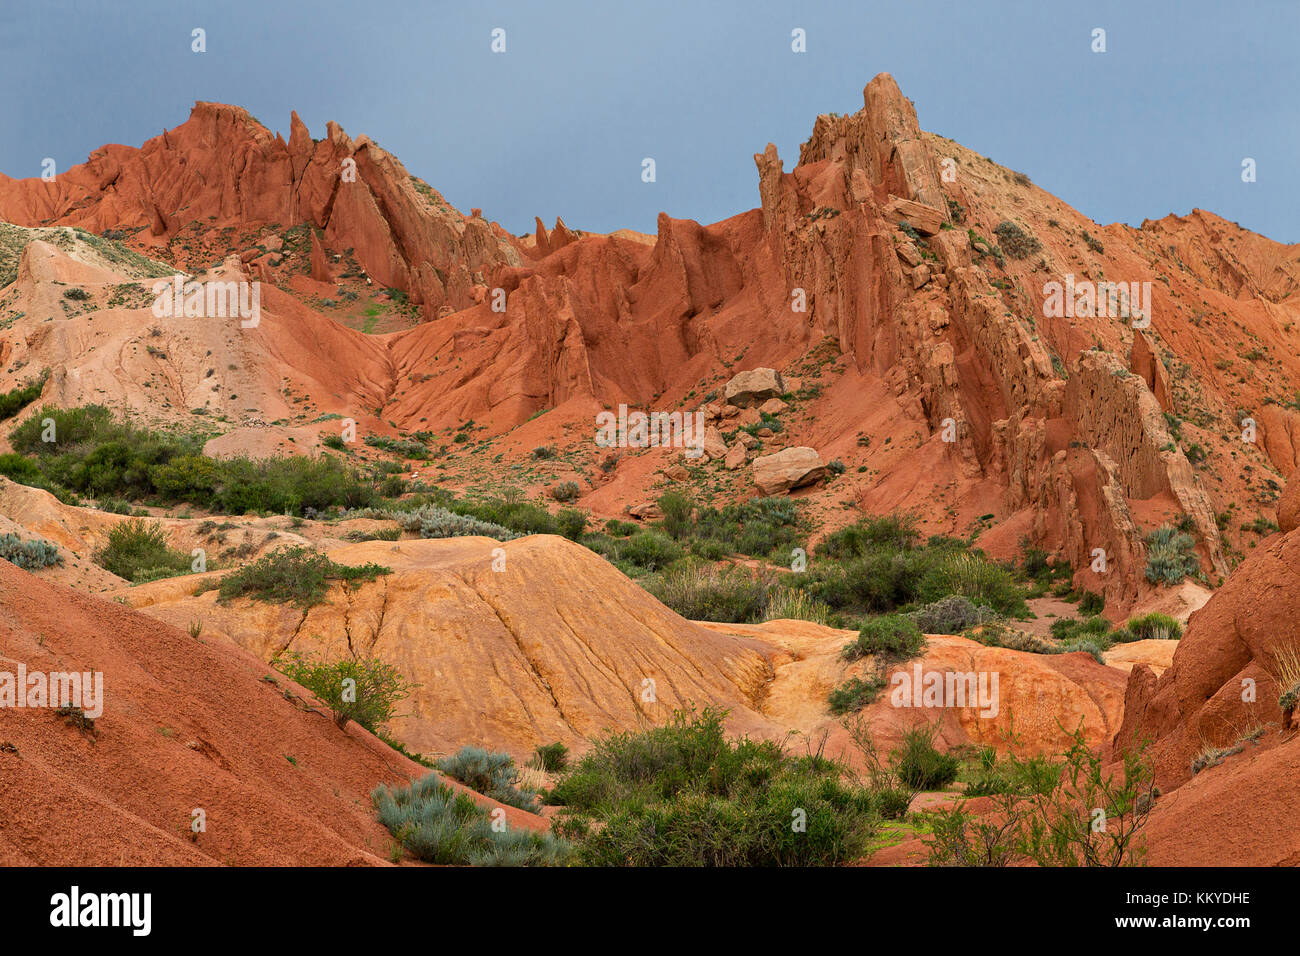 Rosso formazioni di roccia noto come castello da favola, in kaji dire, Kirghizistan, Foto Stock